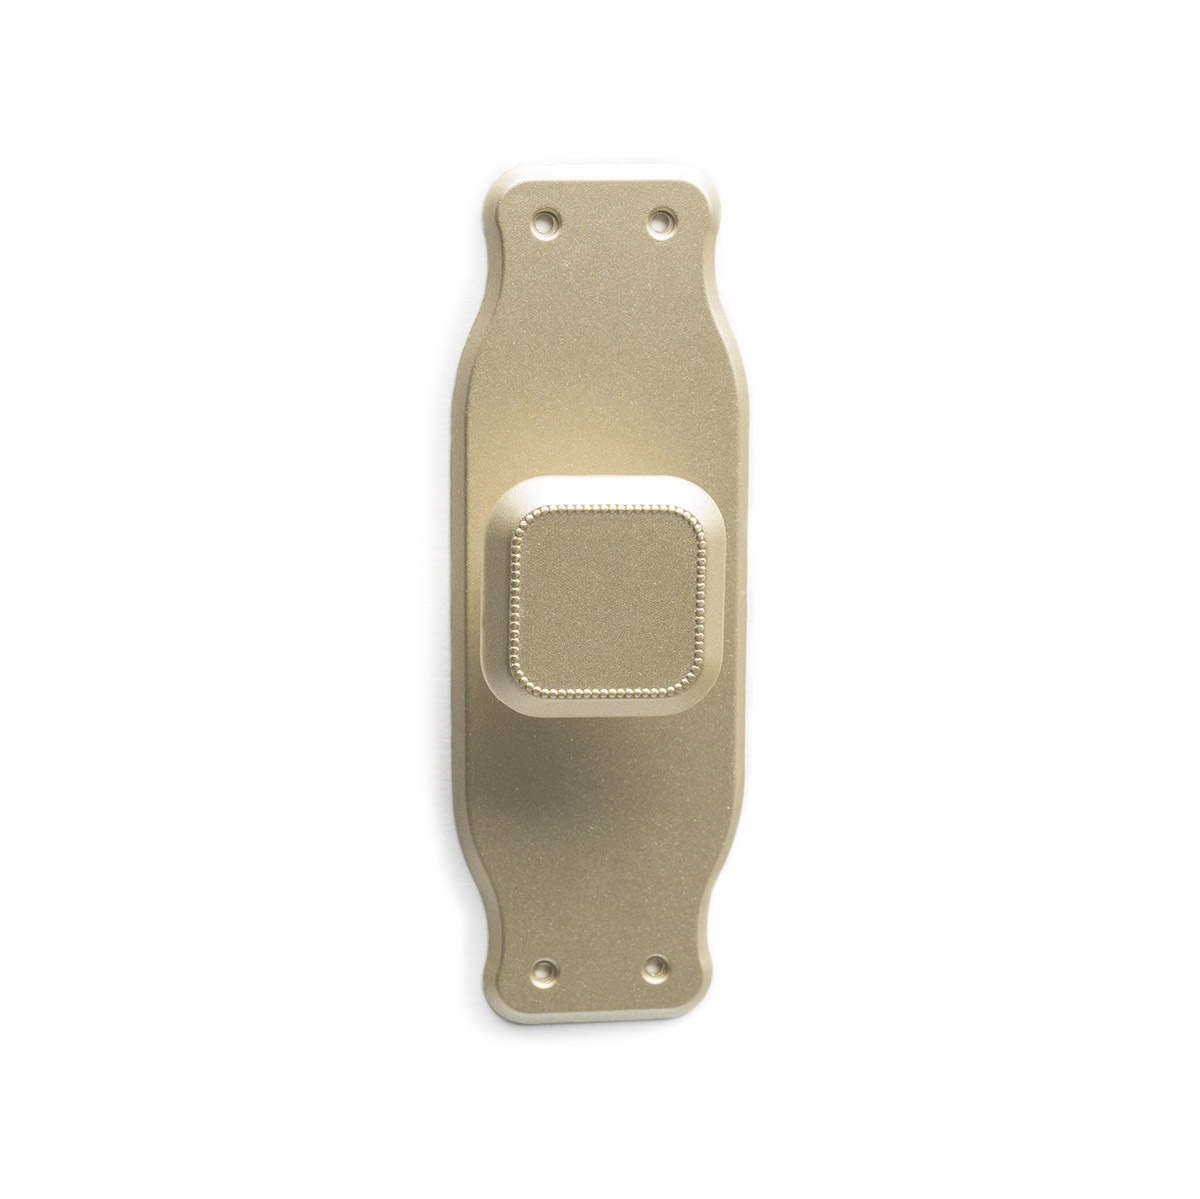 Bouton de plaque avec finition en or mat par zamak, dimensions: 110x38x24mm